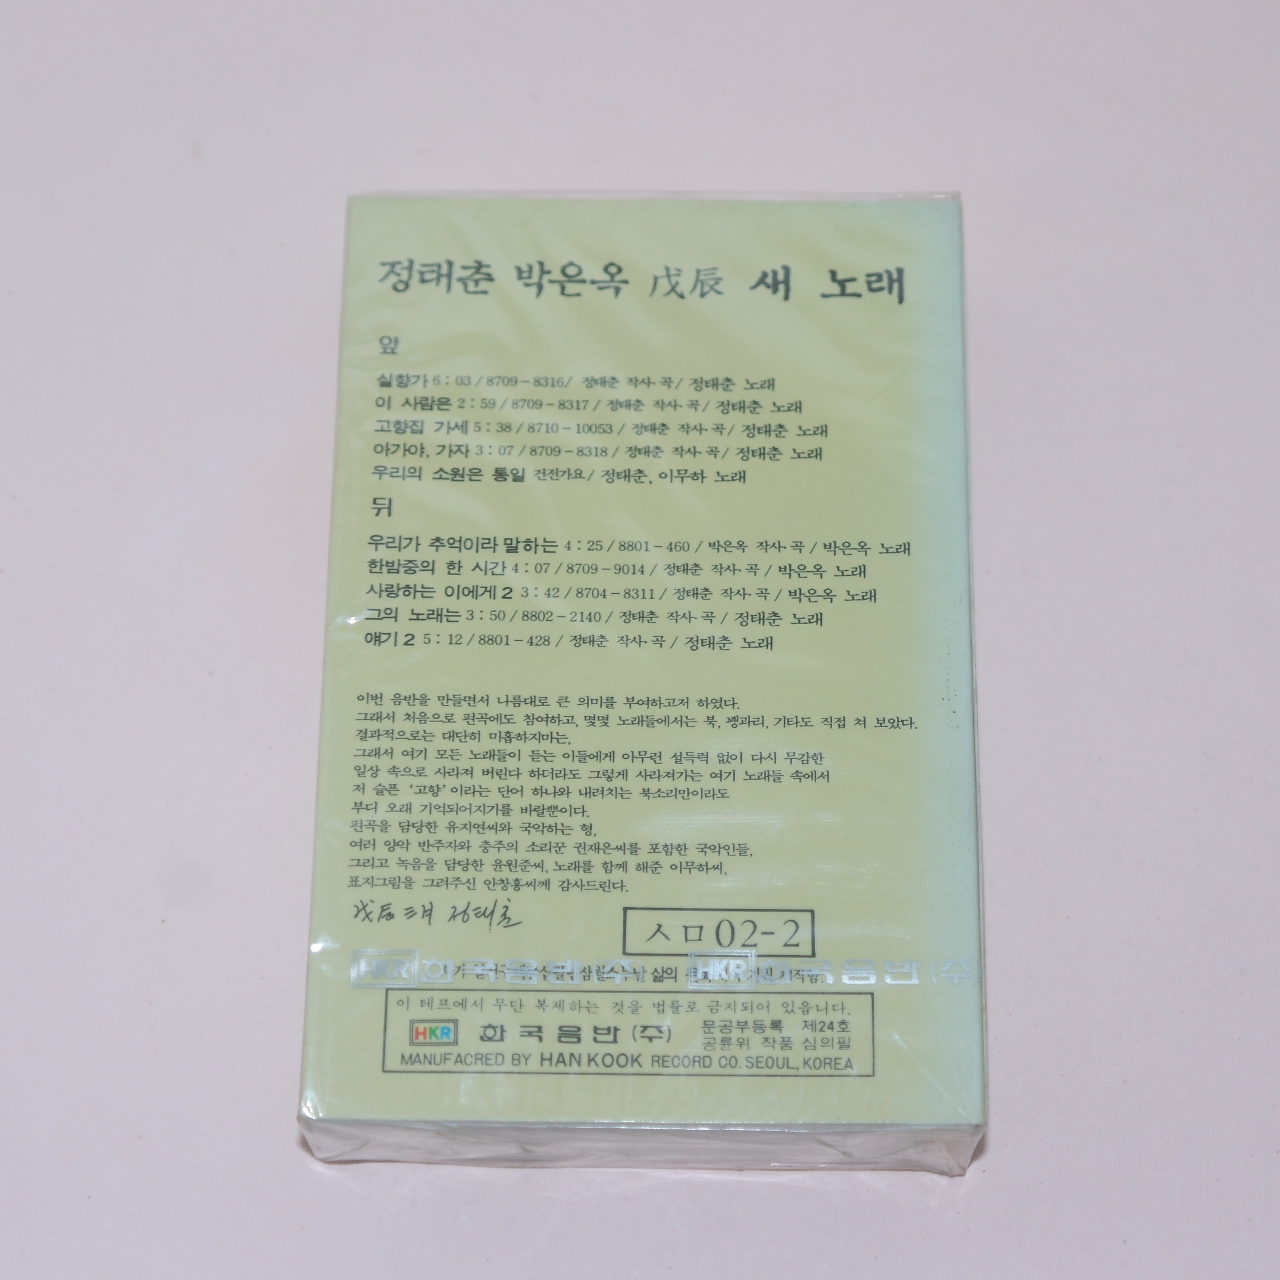 154-근대사 미개봉 테이프 정태춘 박은옥